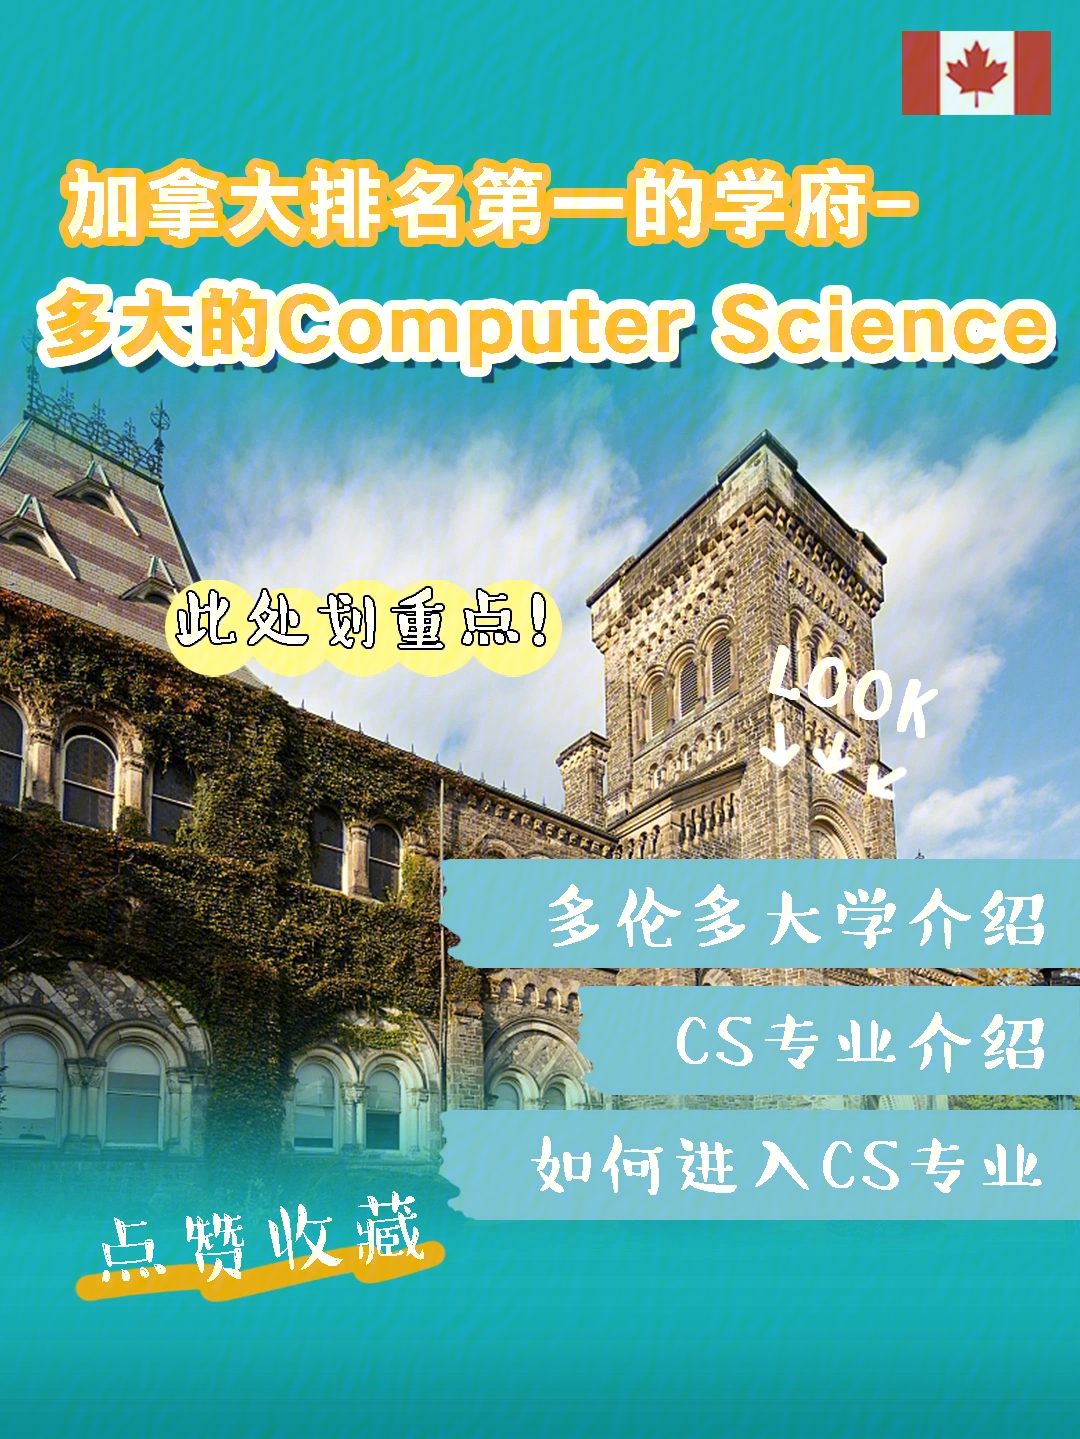 2022qs世界大学排名 2156661566·computer science专业介绍